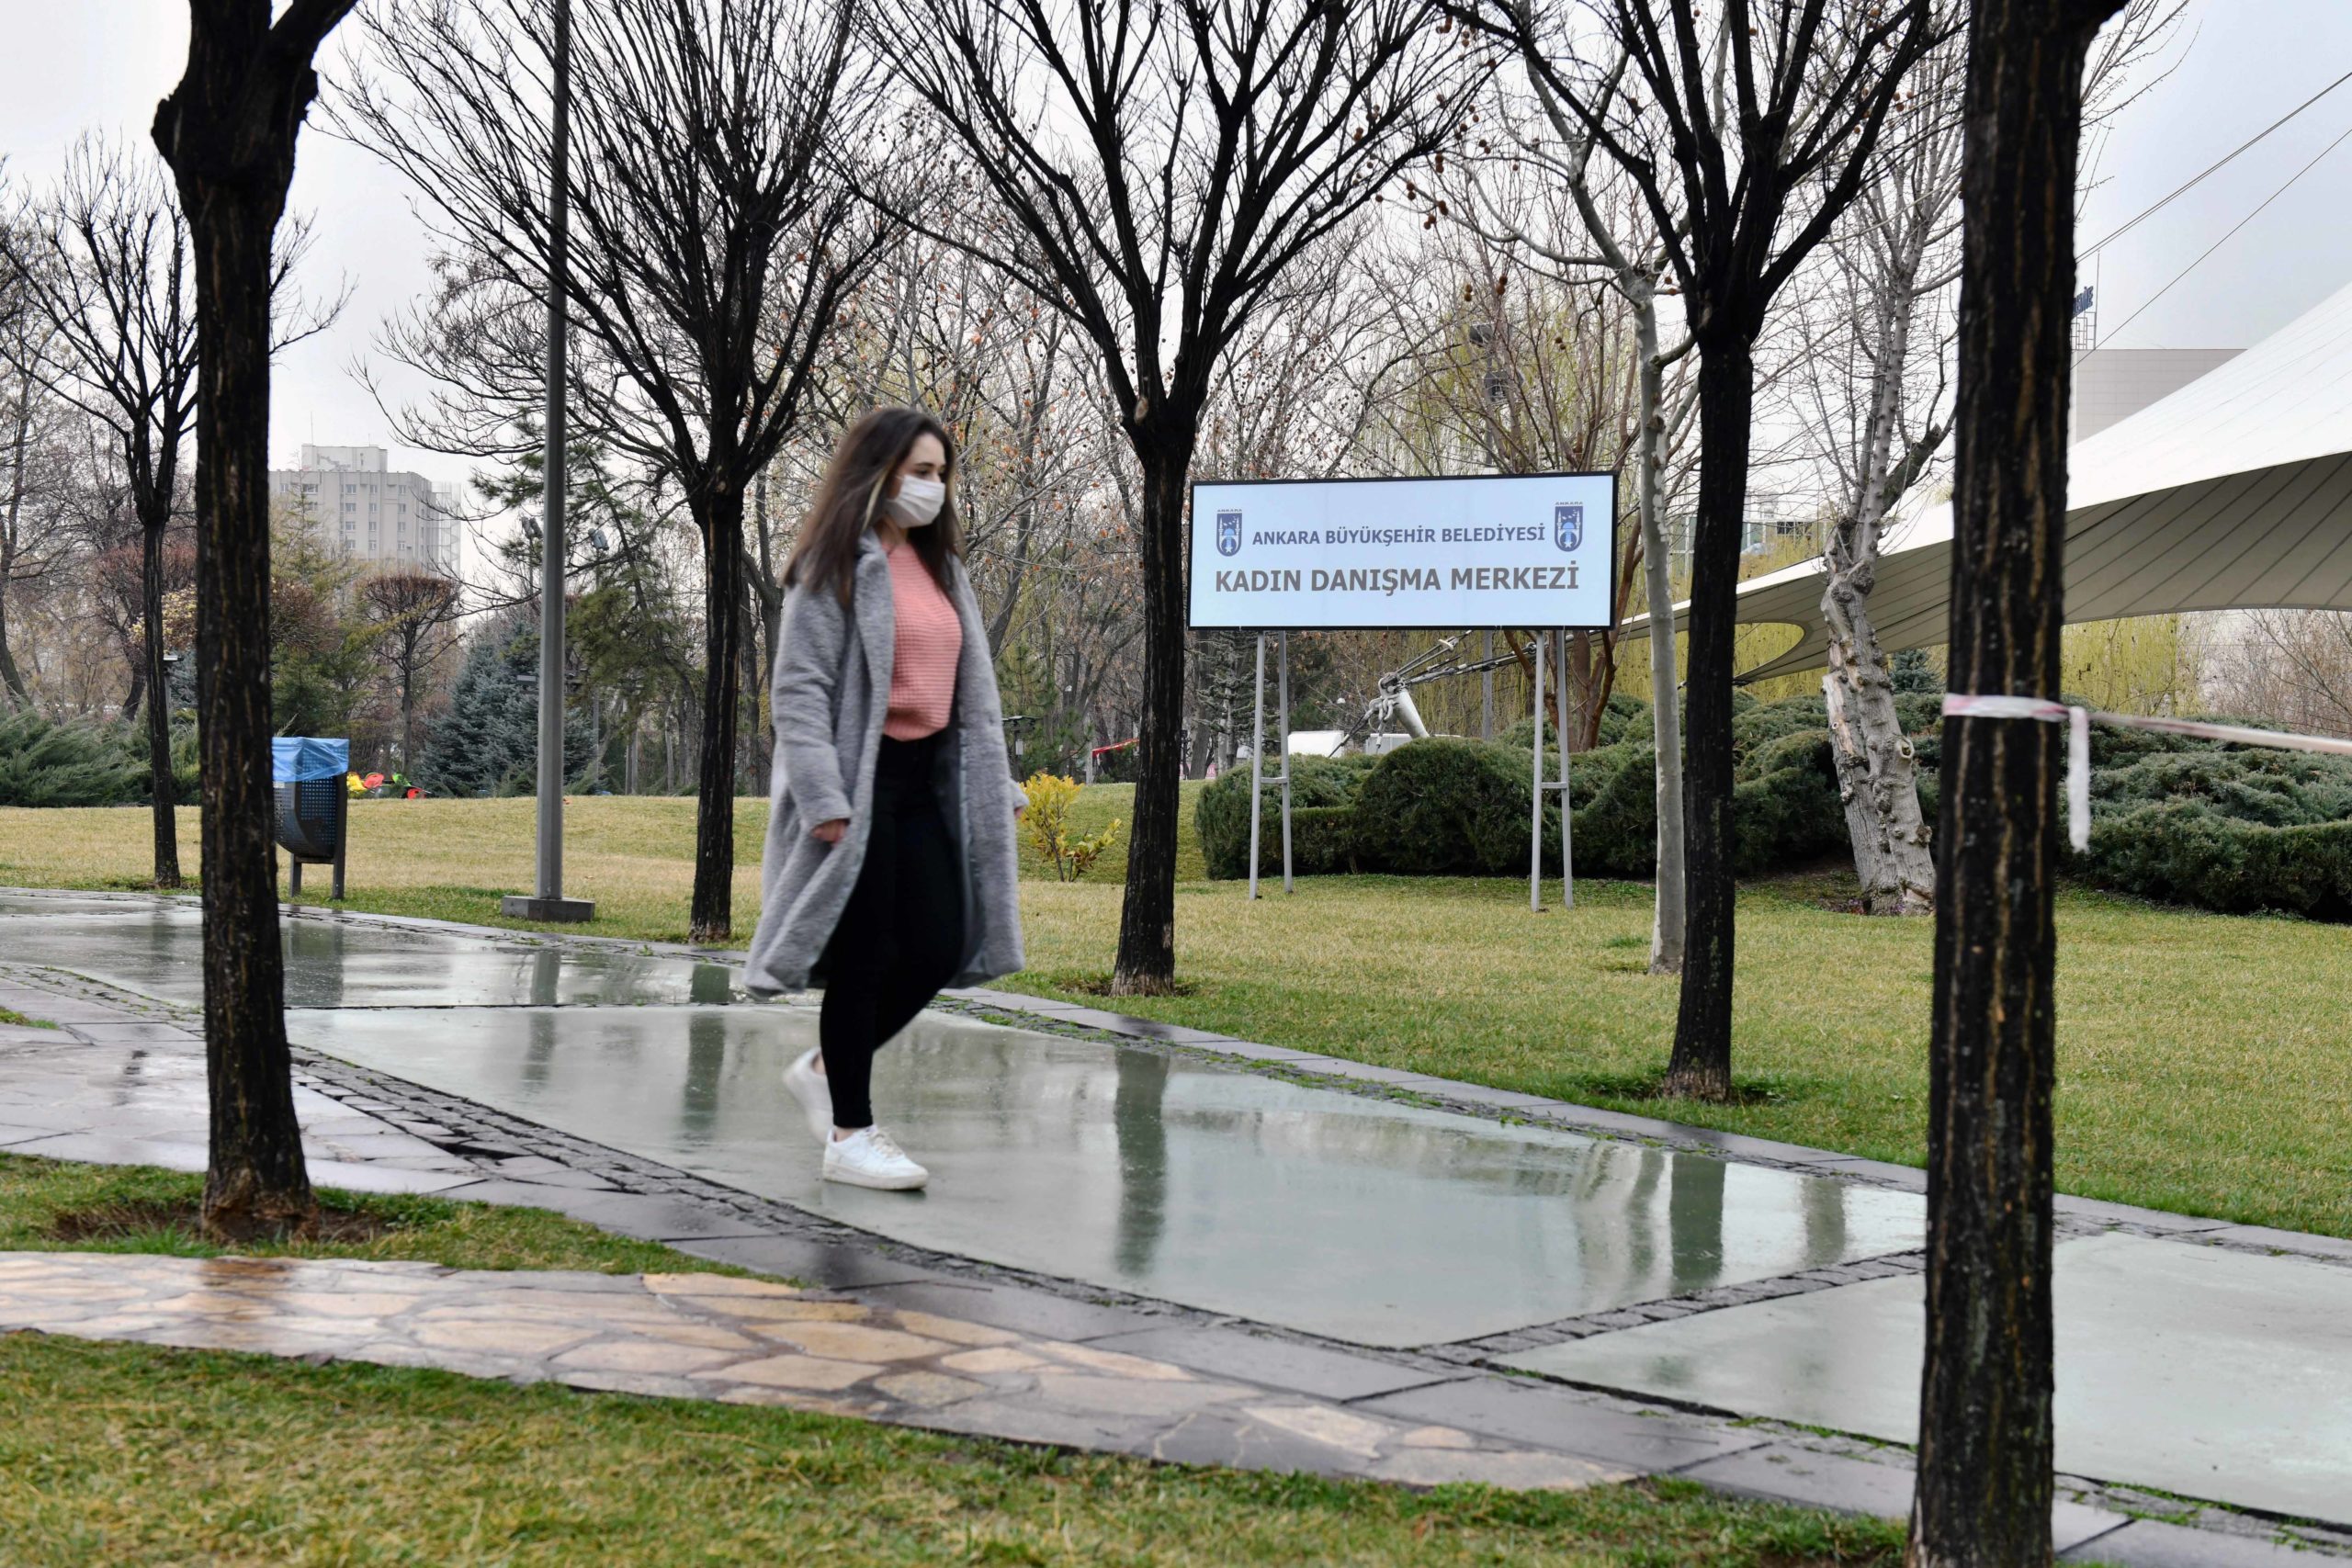  Ankara’da Kadınların Güven Noktası: ‘Büyükşehir Belediyesi Kadın Danışma Merkezi’